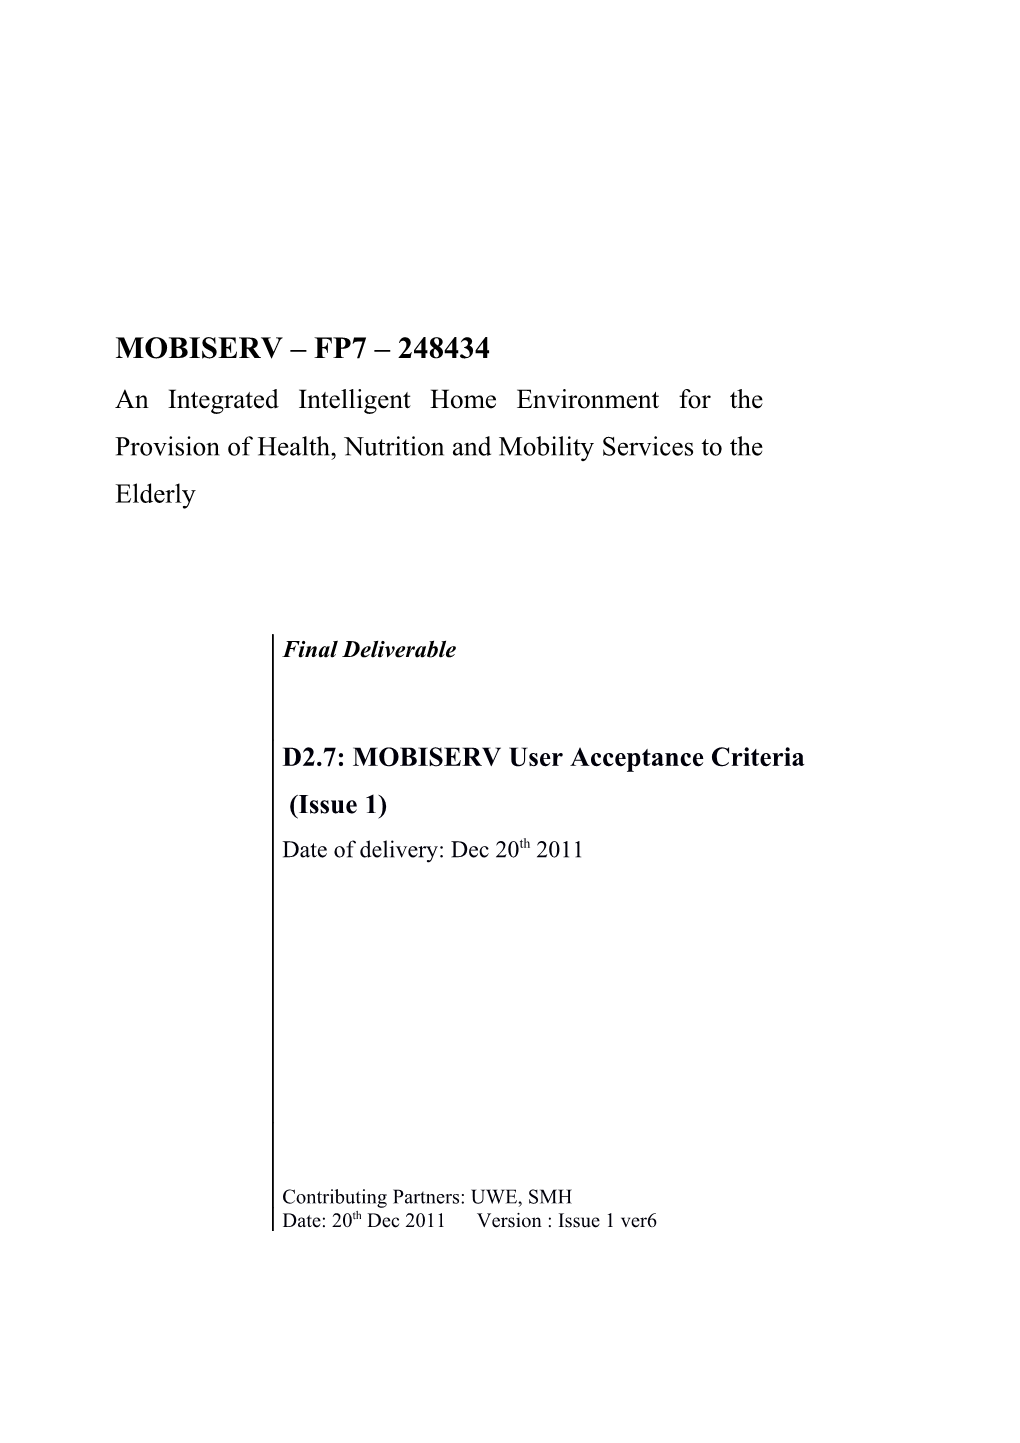 D2.7: MOBISERV User Acceptance Criteria Report Issue 11/53